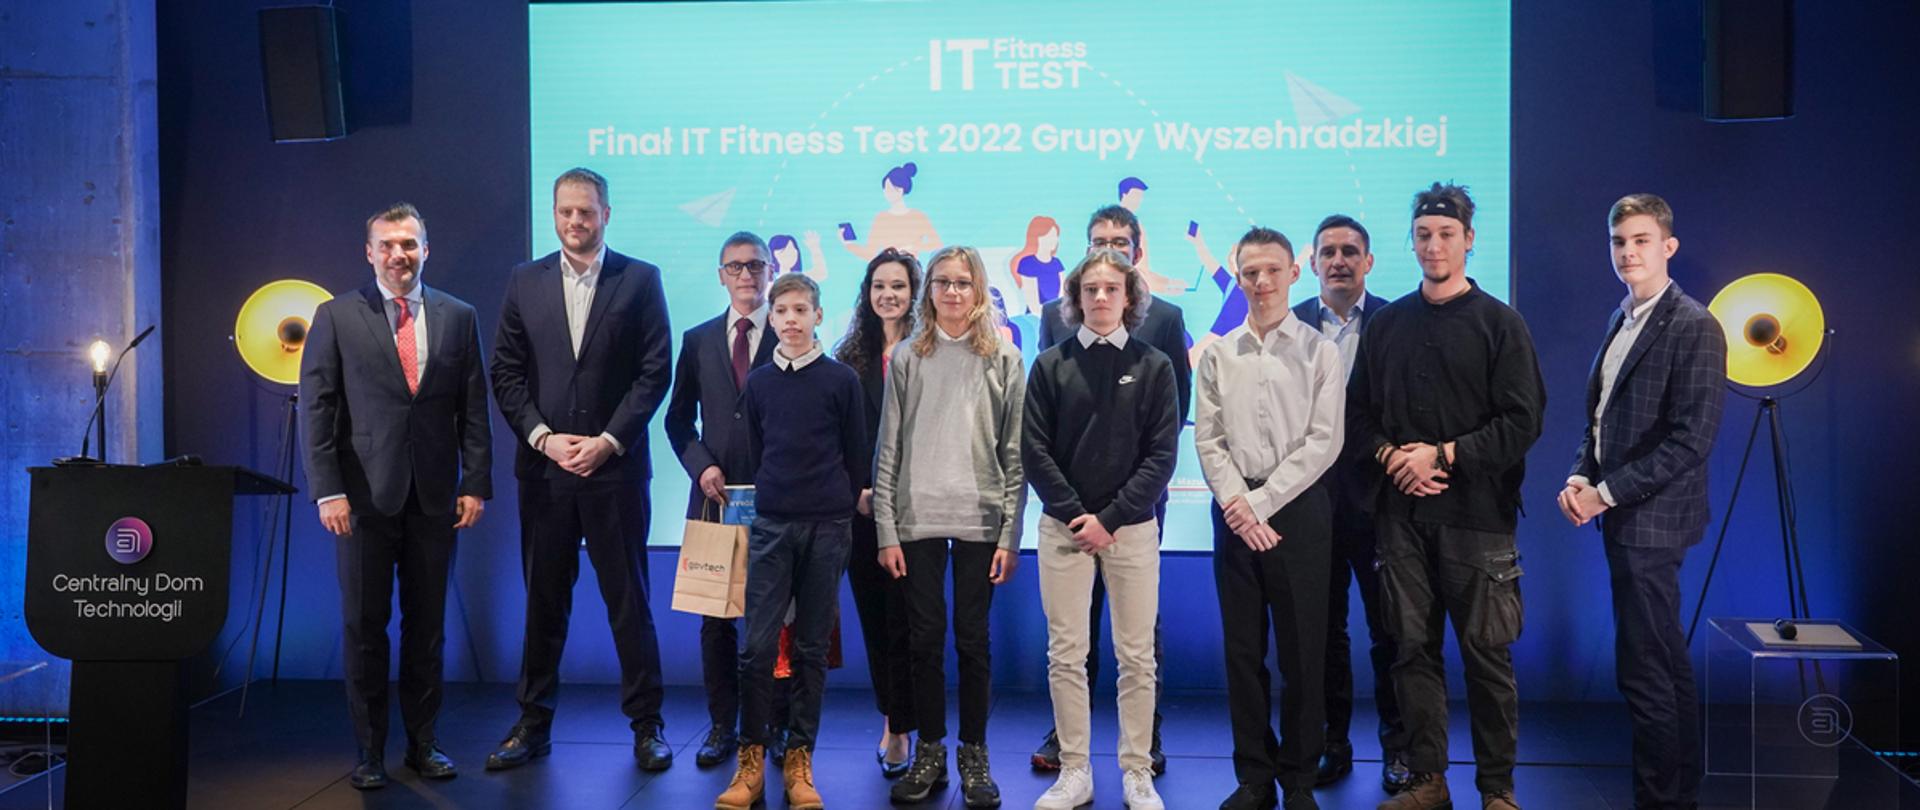 Grupa zwycięzców zdjęcie na tle diody z napisem IT Fitness Test 2022 Grupy Wyszehradzkiej